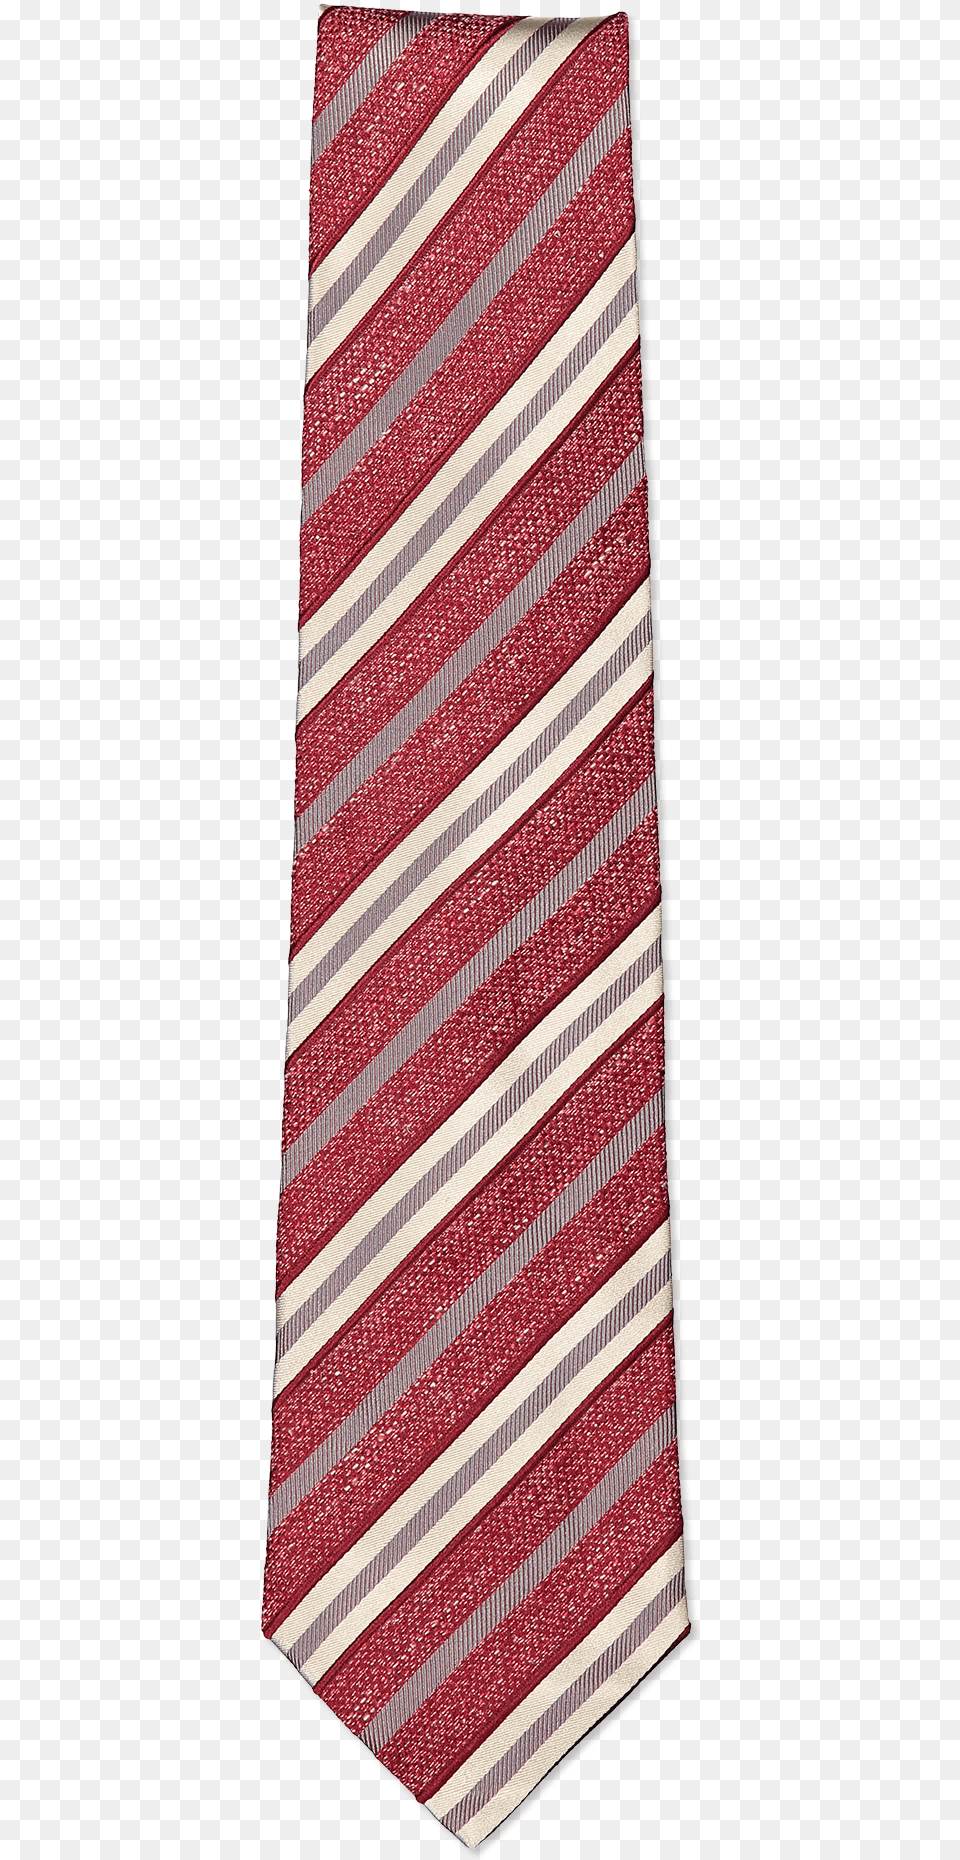 Red Stripe Neck Tie Necktie, Accessories, Formal Wear, Home Decor Png